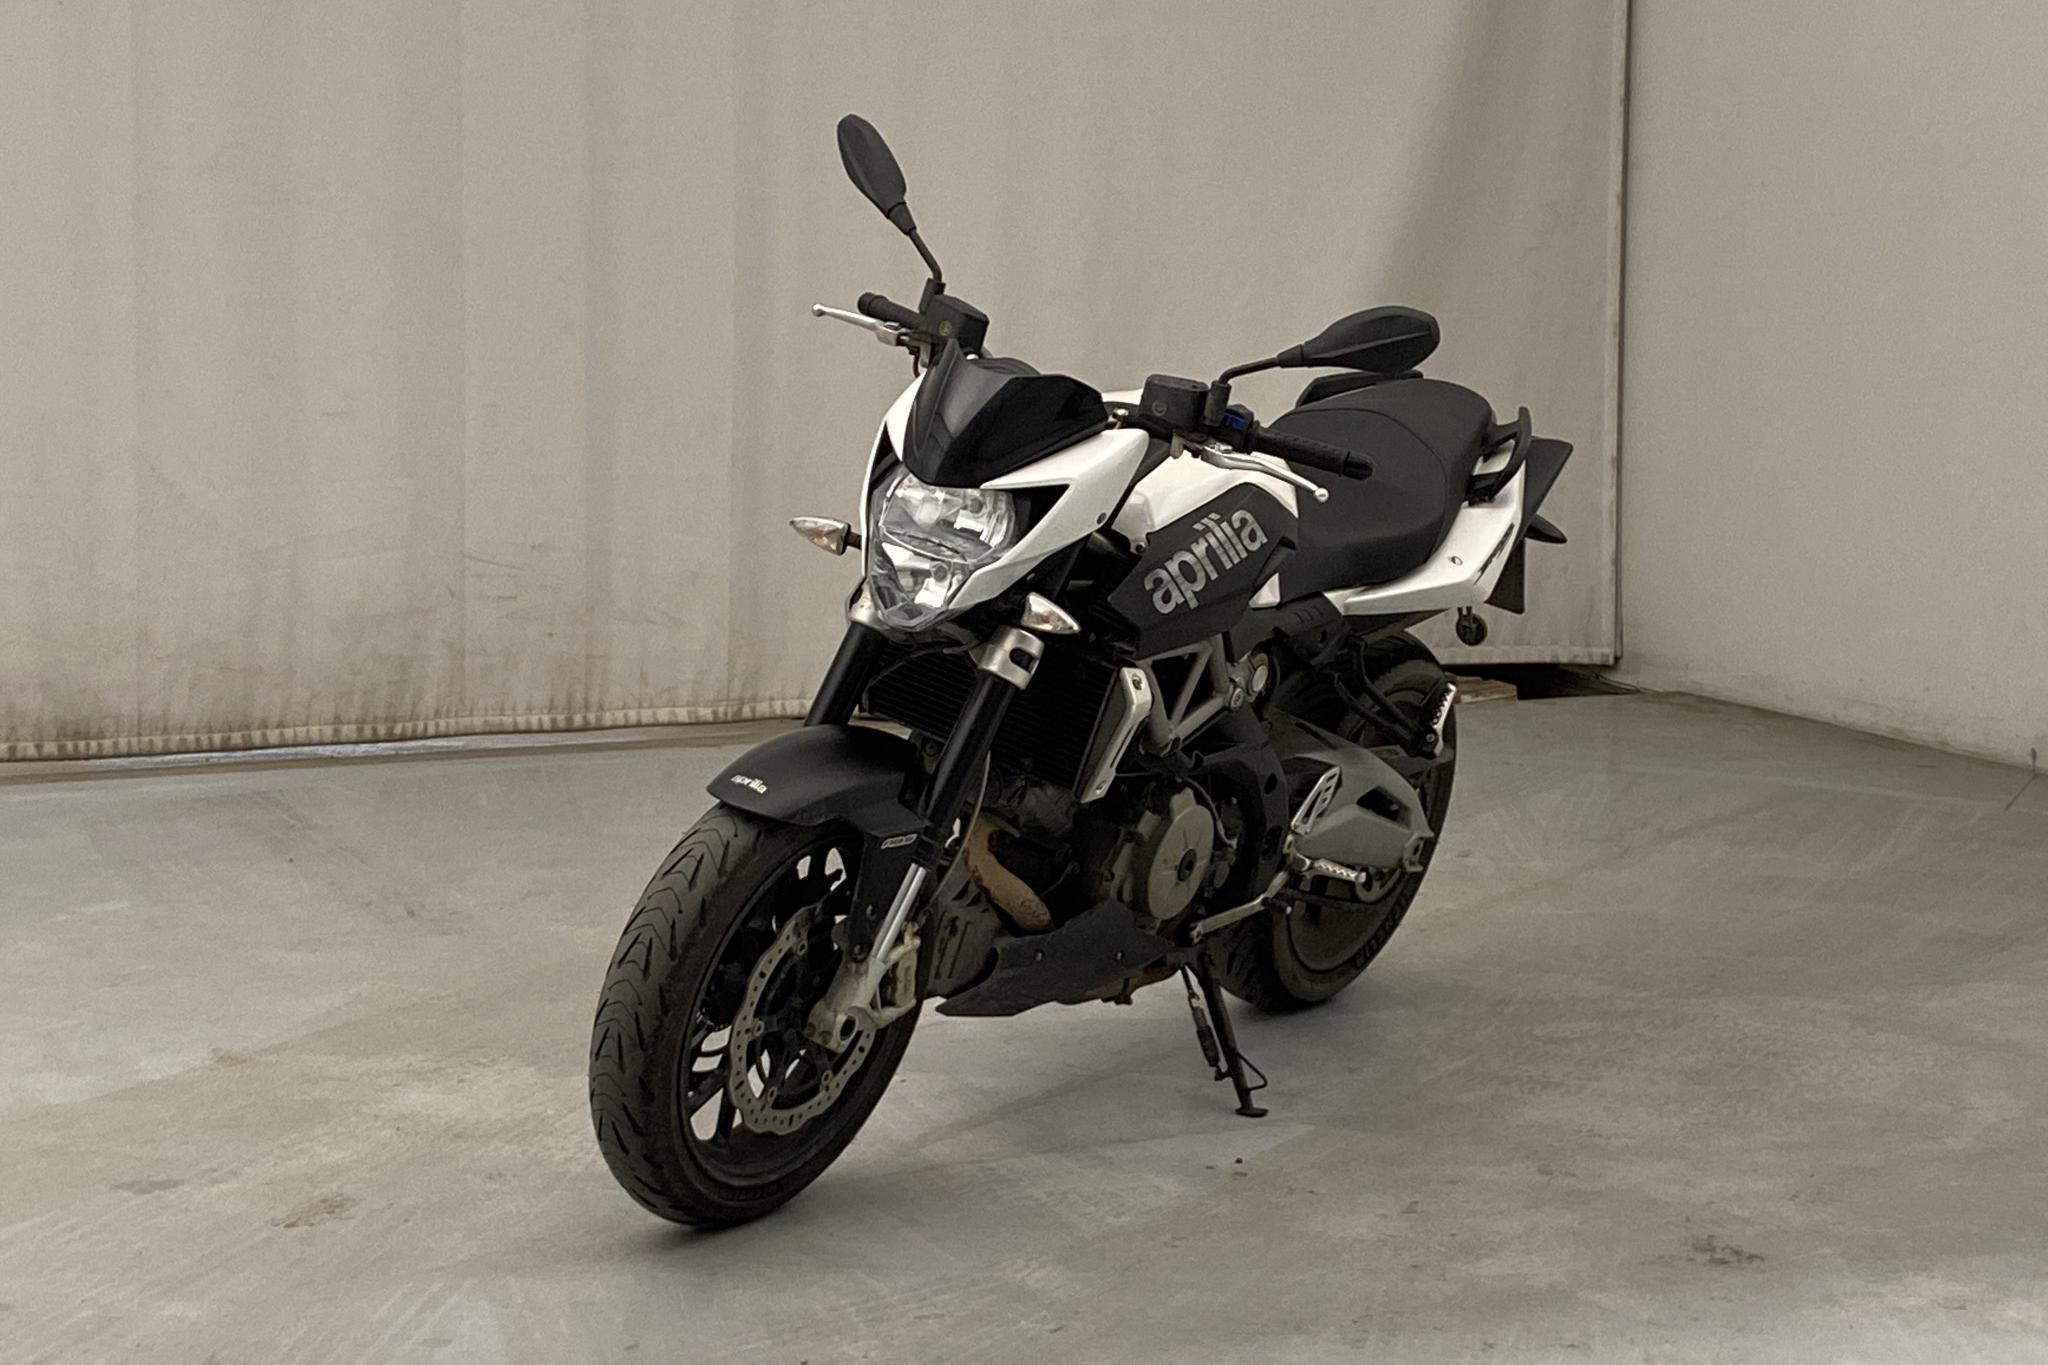 APRILIA SHIVER 750 Motorcykel - 25 210 km - Manual - white - 2013